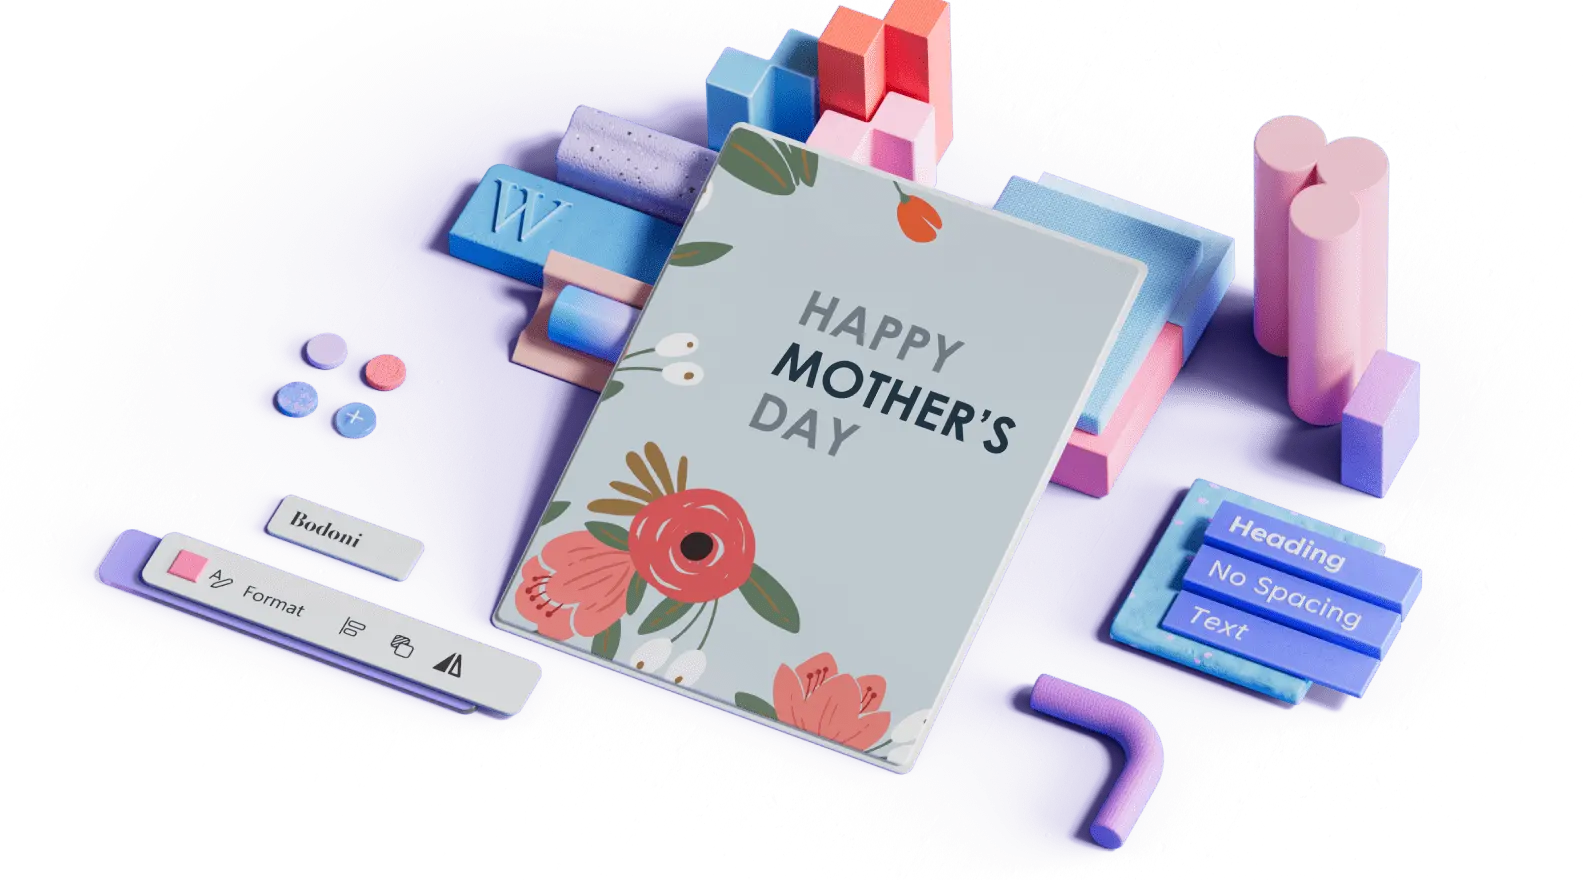 Флорален шаблон за Деня на майката, заобиколен от 3D елементи на дизайна